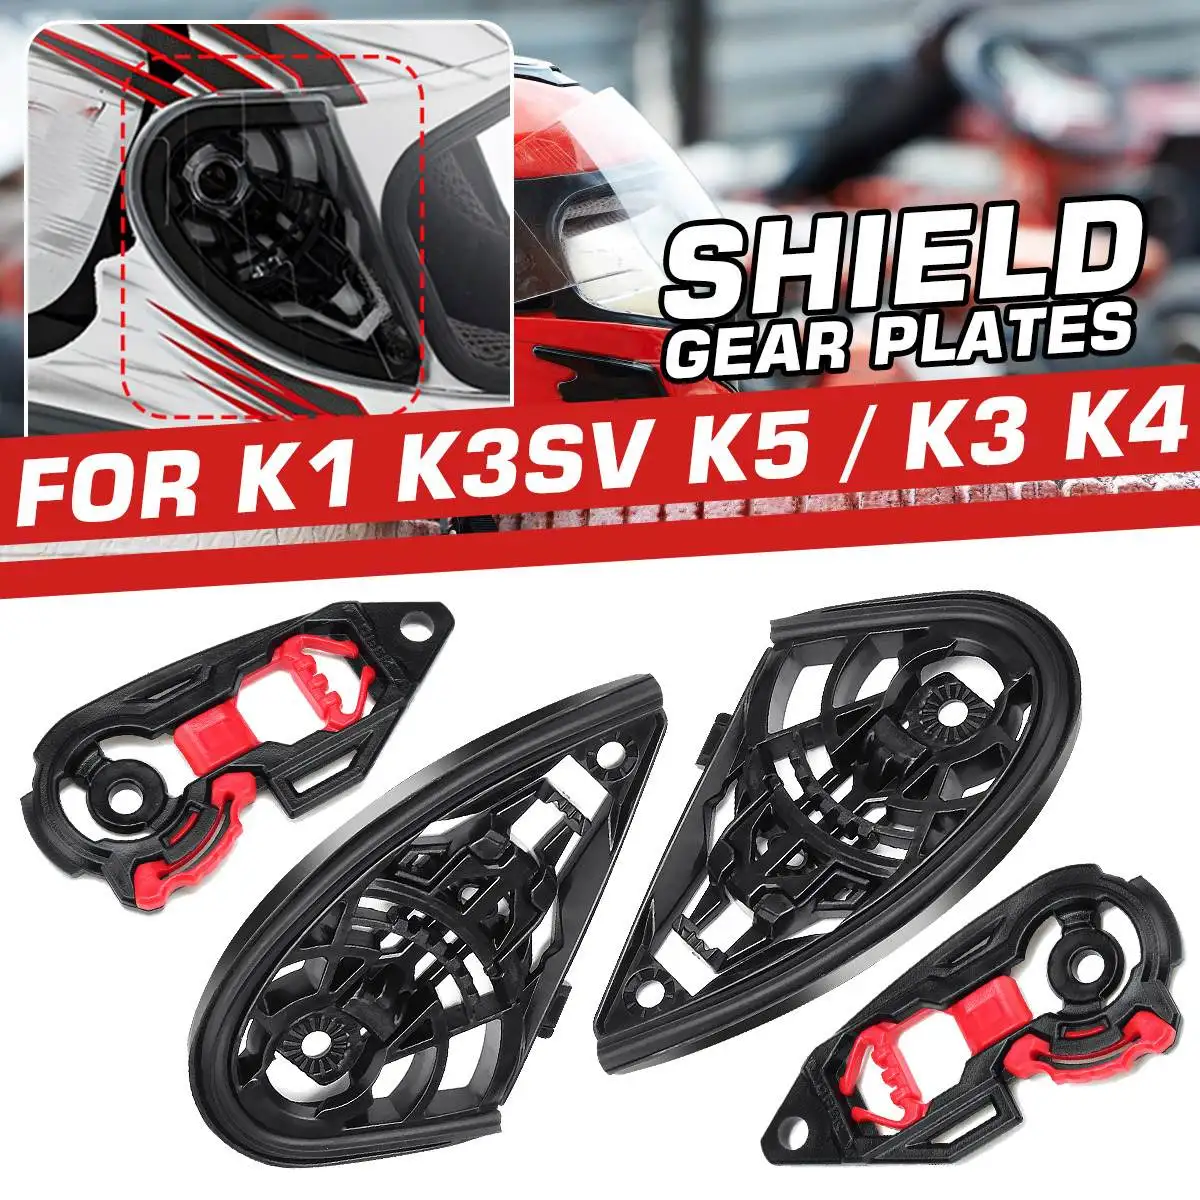 

Аксессуары для мотоциклетного шлема прочная пластина винты практичная Базовая линза козырек левый правый инструмент для K3 K4 K1 K3SV K5